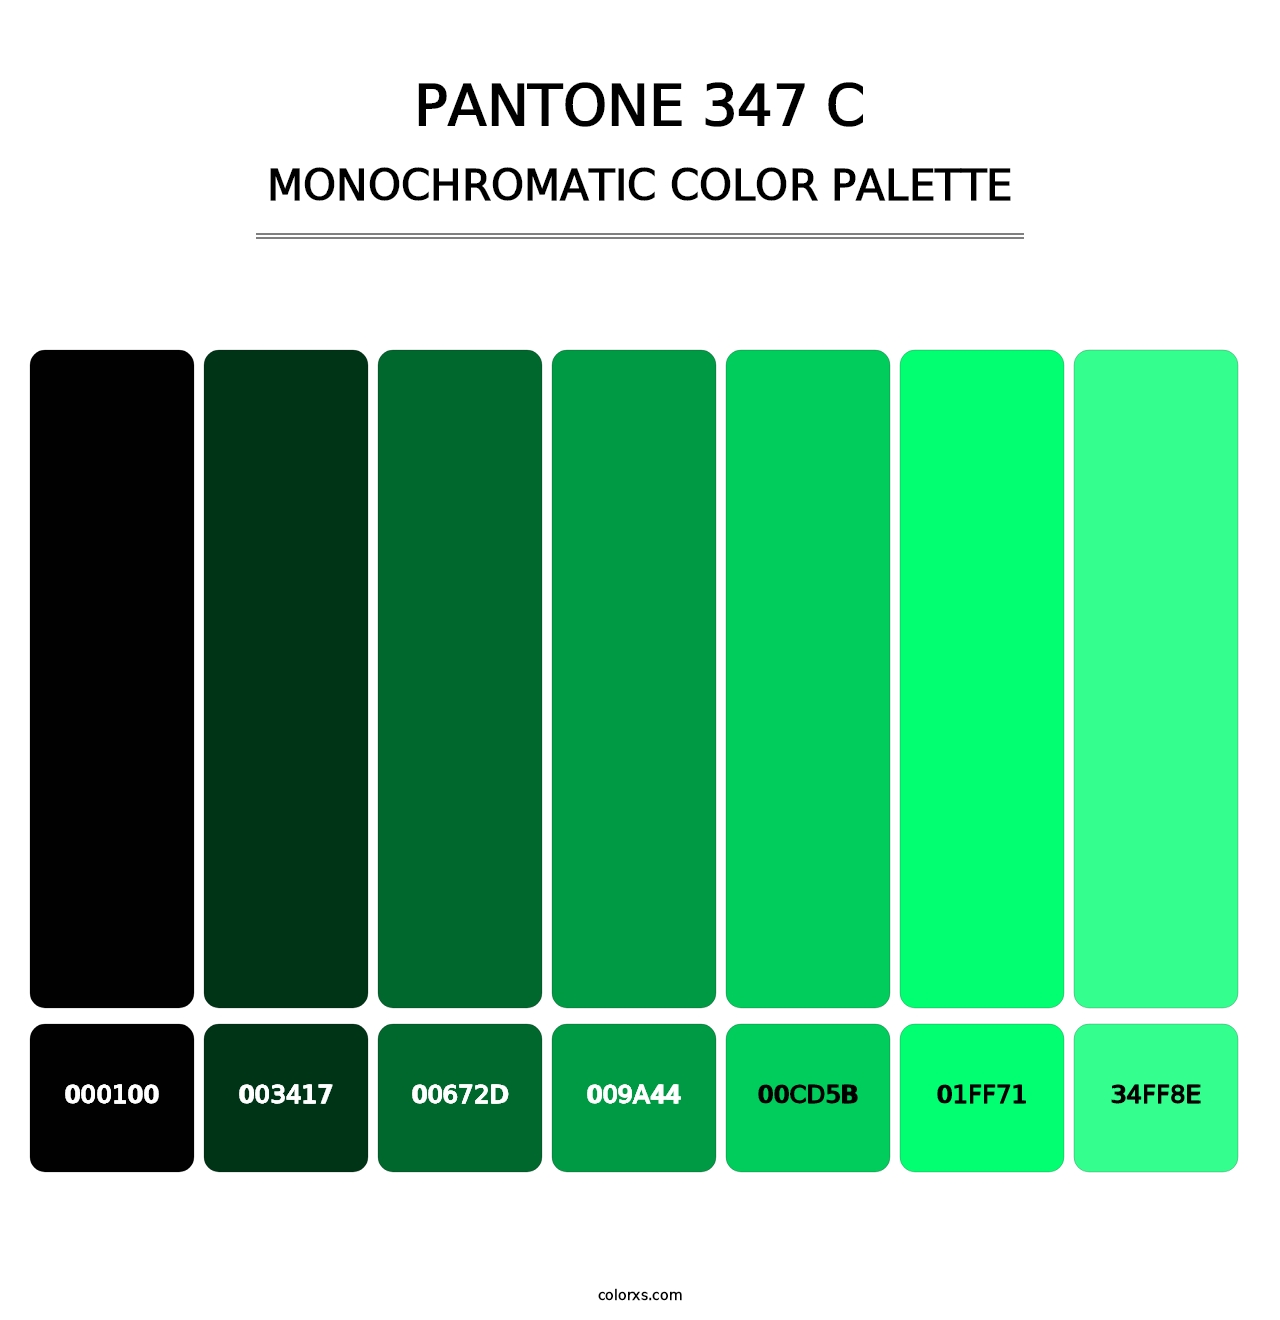 PANTONE 347 C - Monochromatic Color Palette